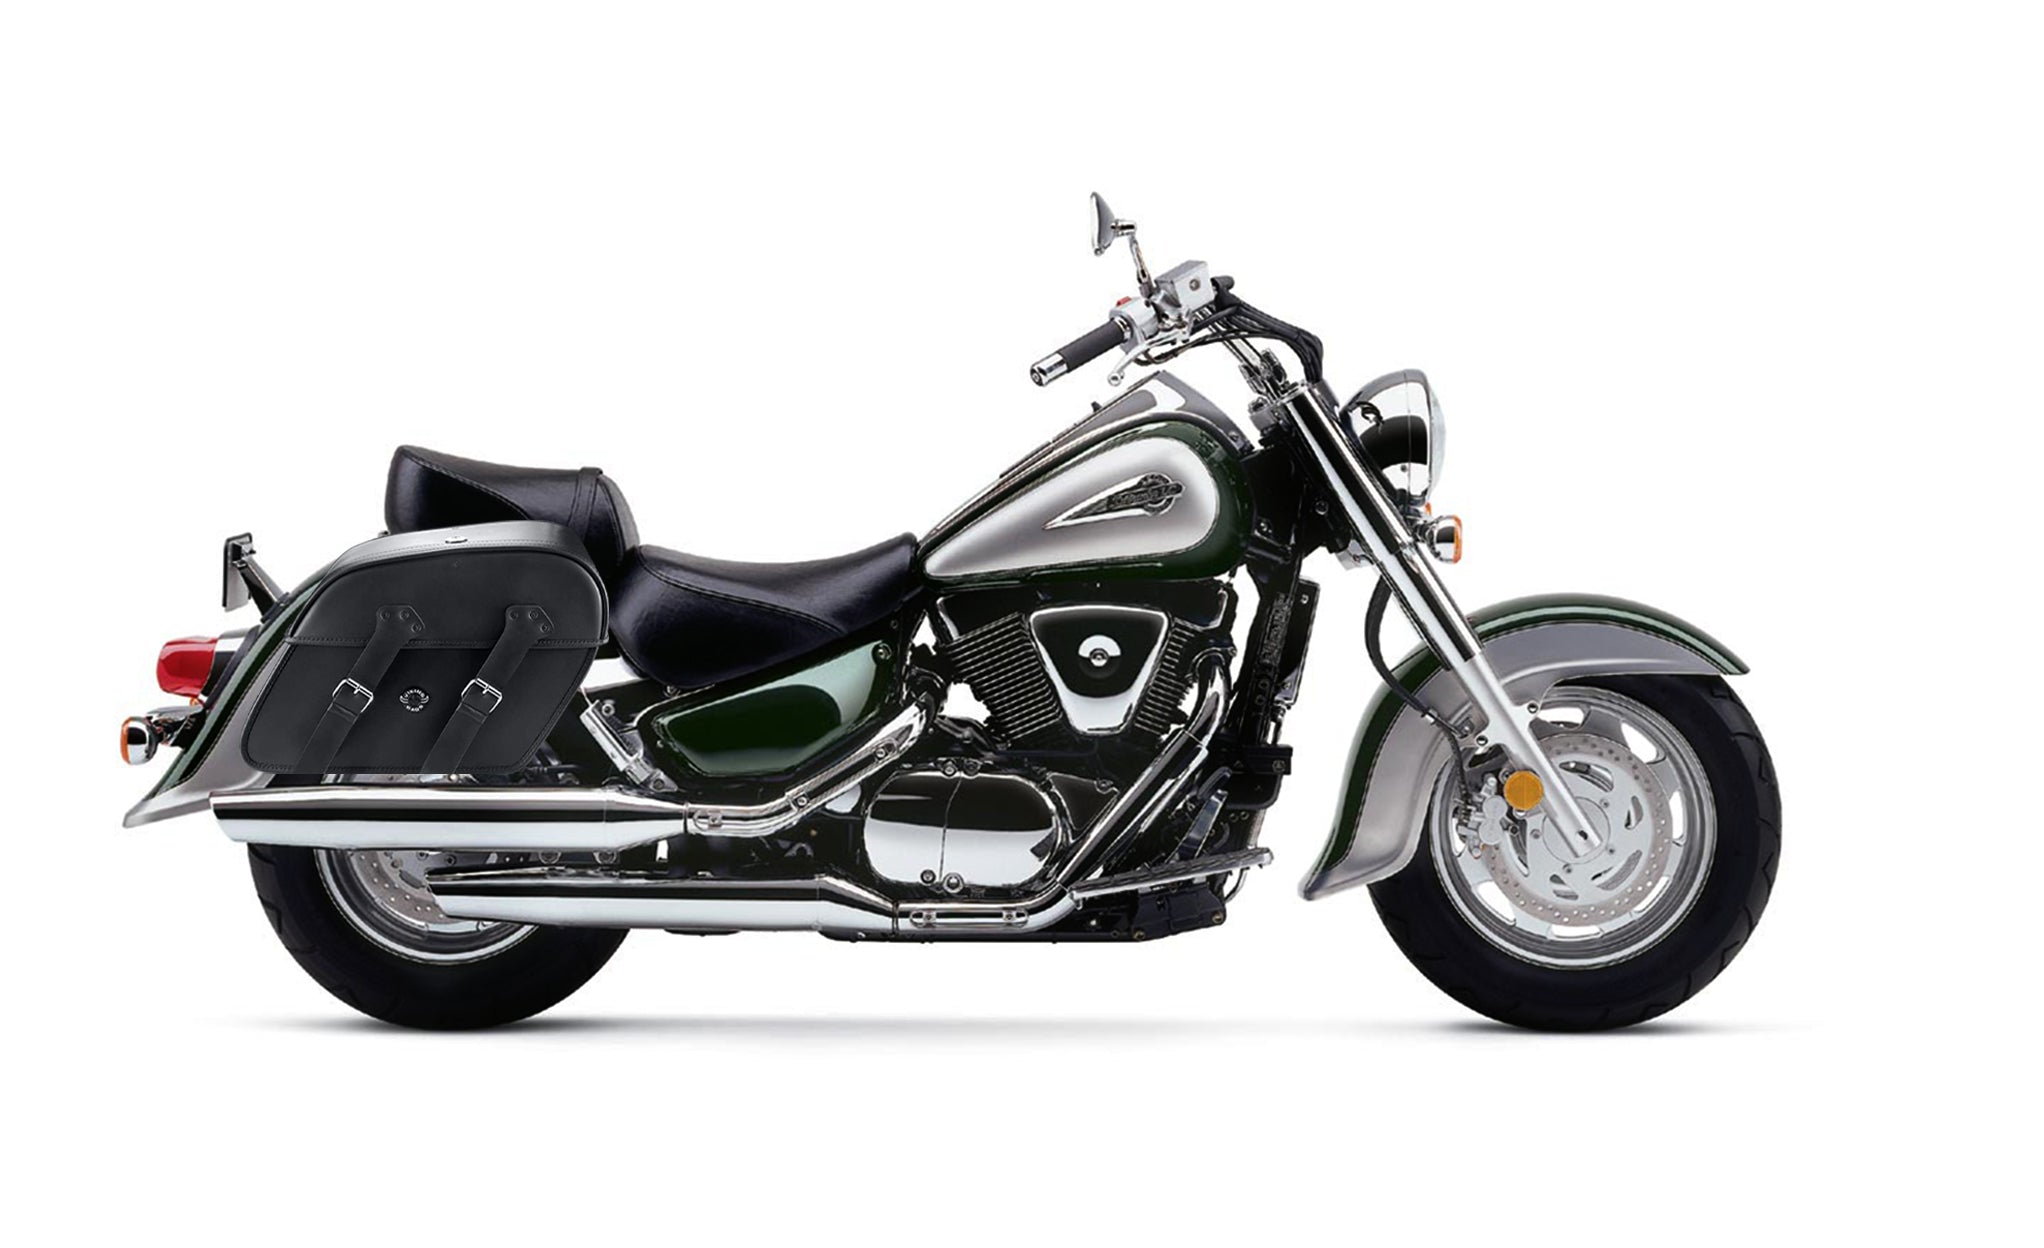 Viking Raven Large Suzuki Intruder 1500 Vl1500 Motorcycle Leather Saddlebags on Bike Photo @expand